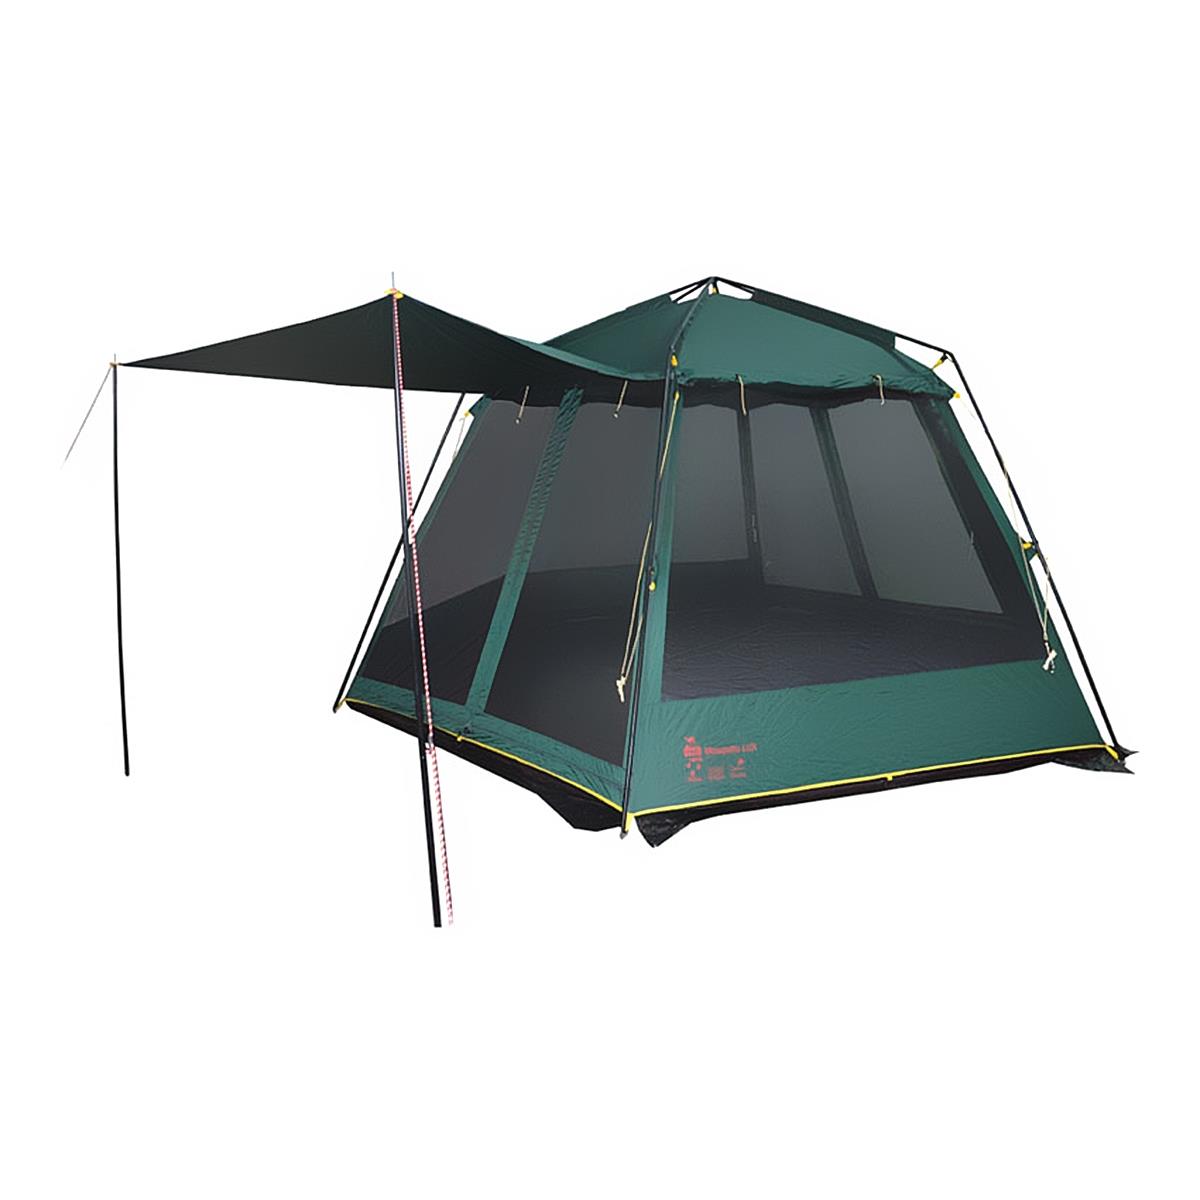 Тент-палатка MOSQUITO LUX GREEN V2 TRT-87 Tramp каркасный бассейн polygroup 366х132 см